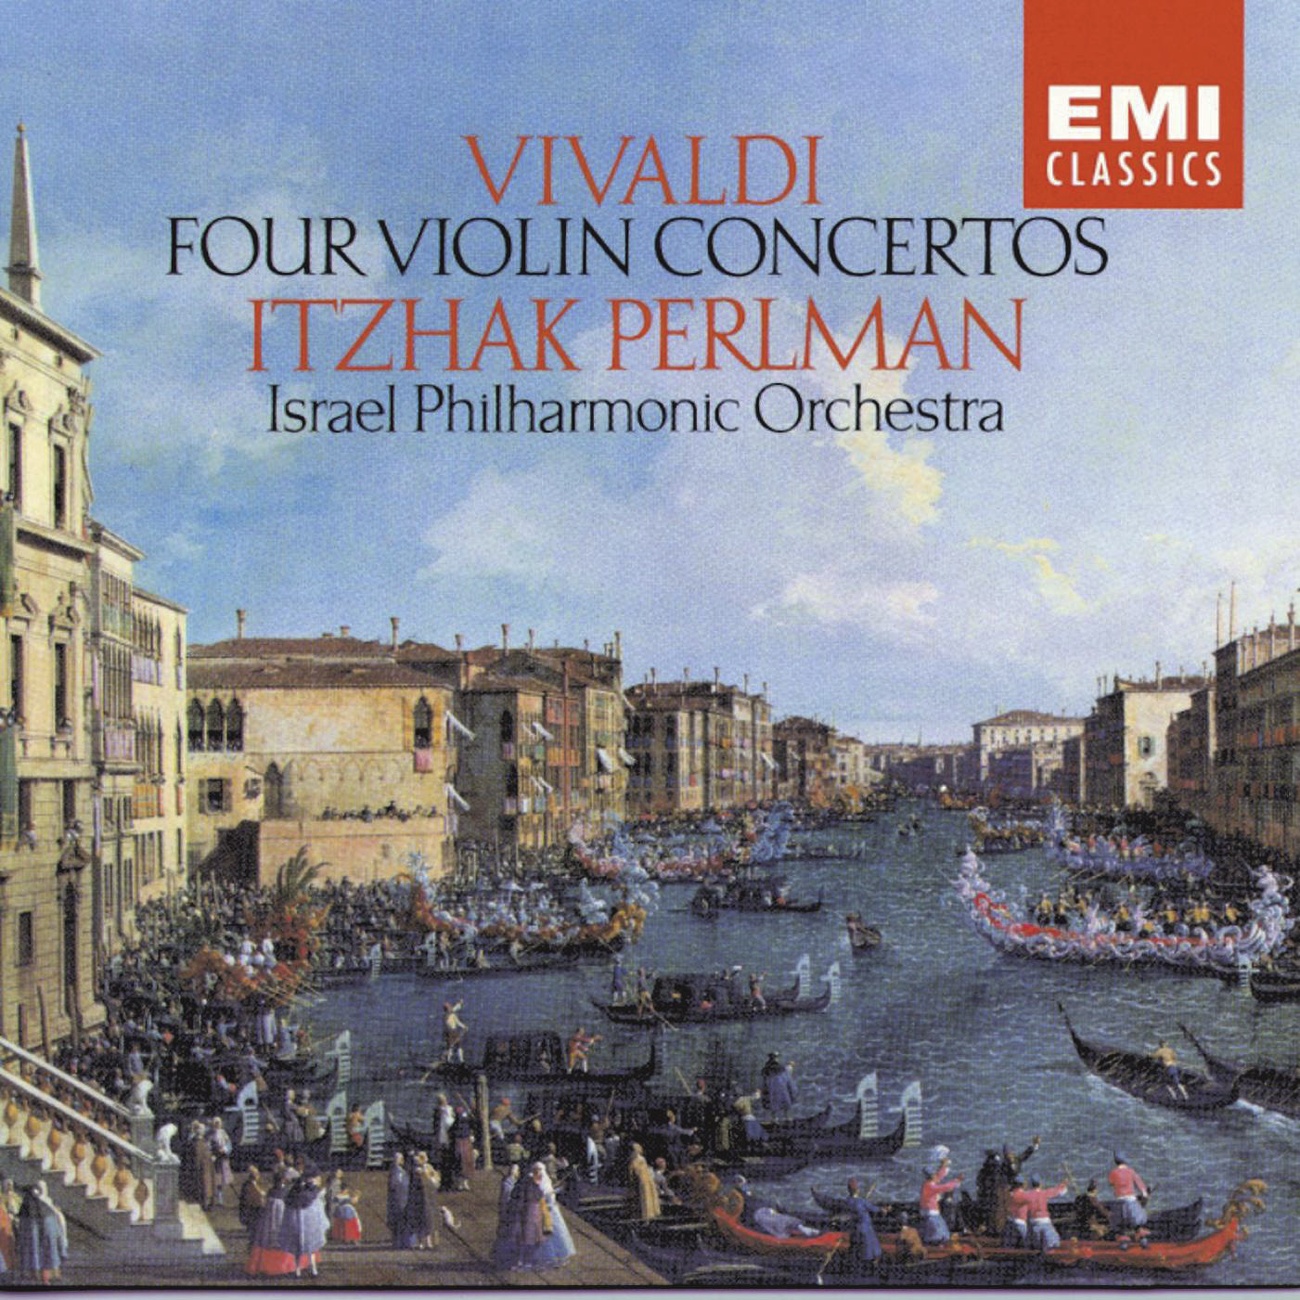 Four Violin Concertos - Vivaldi